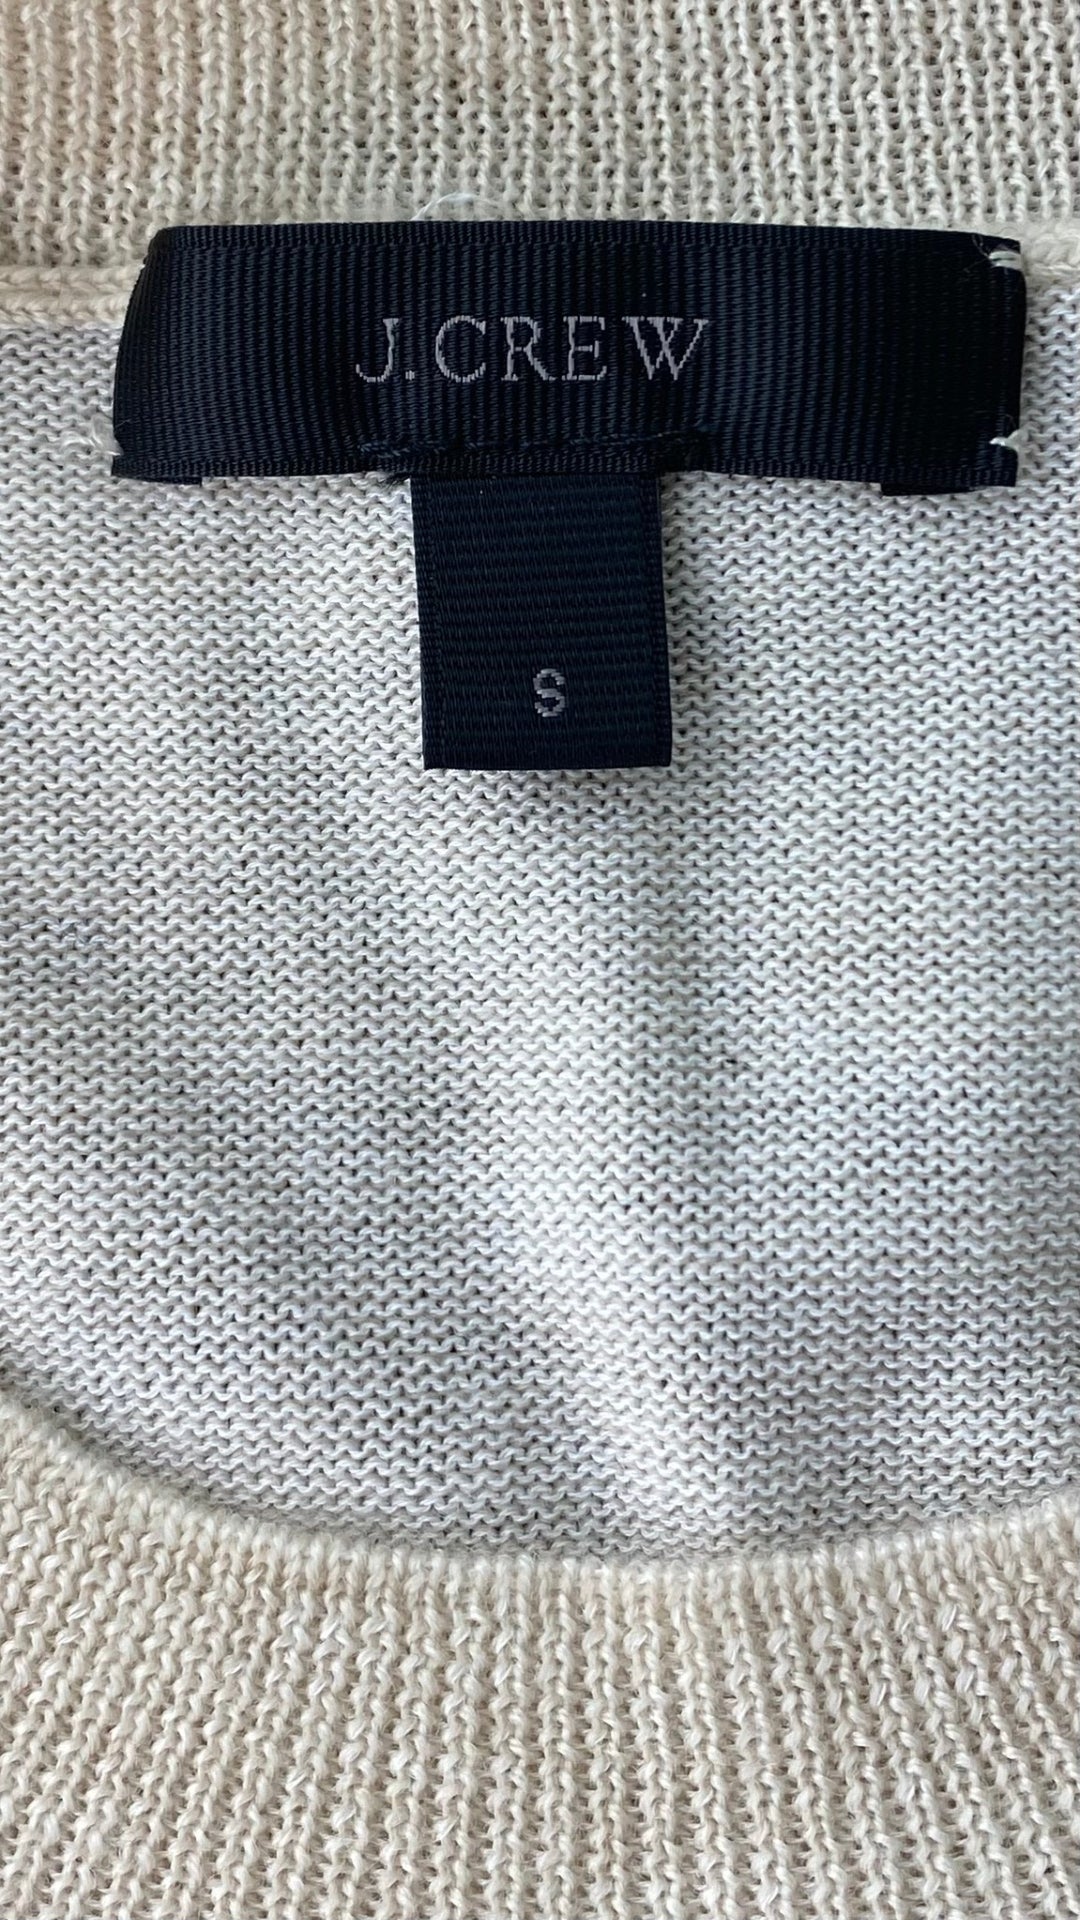 Chandail tricot avoine mélange de laine mérinos et coton, marque J.Crew, taille small. Vue de l'étiquette de marque et taille.